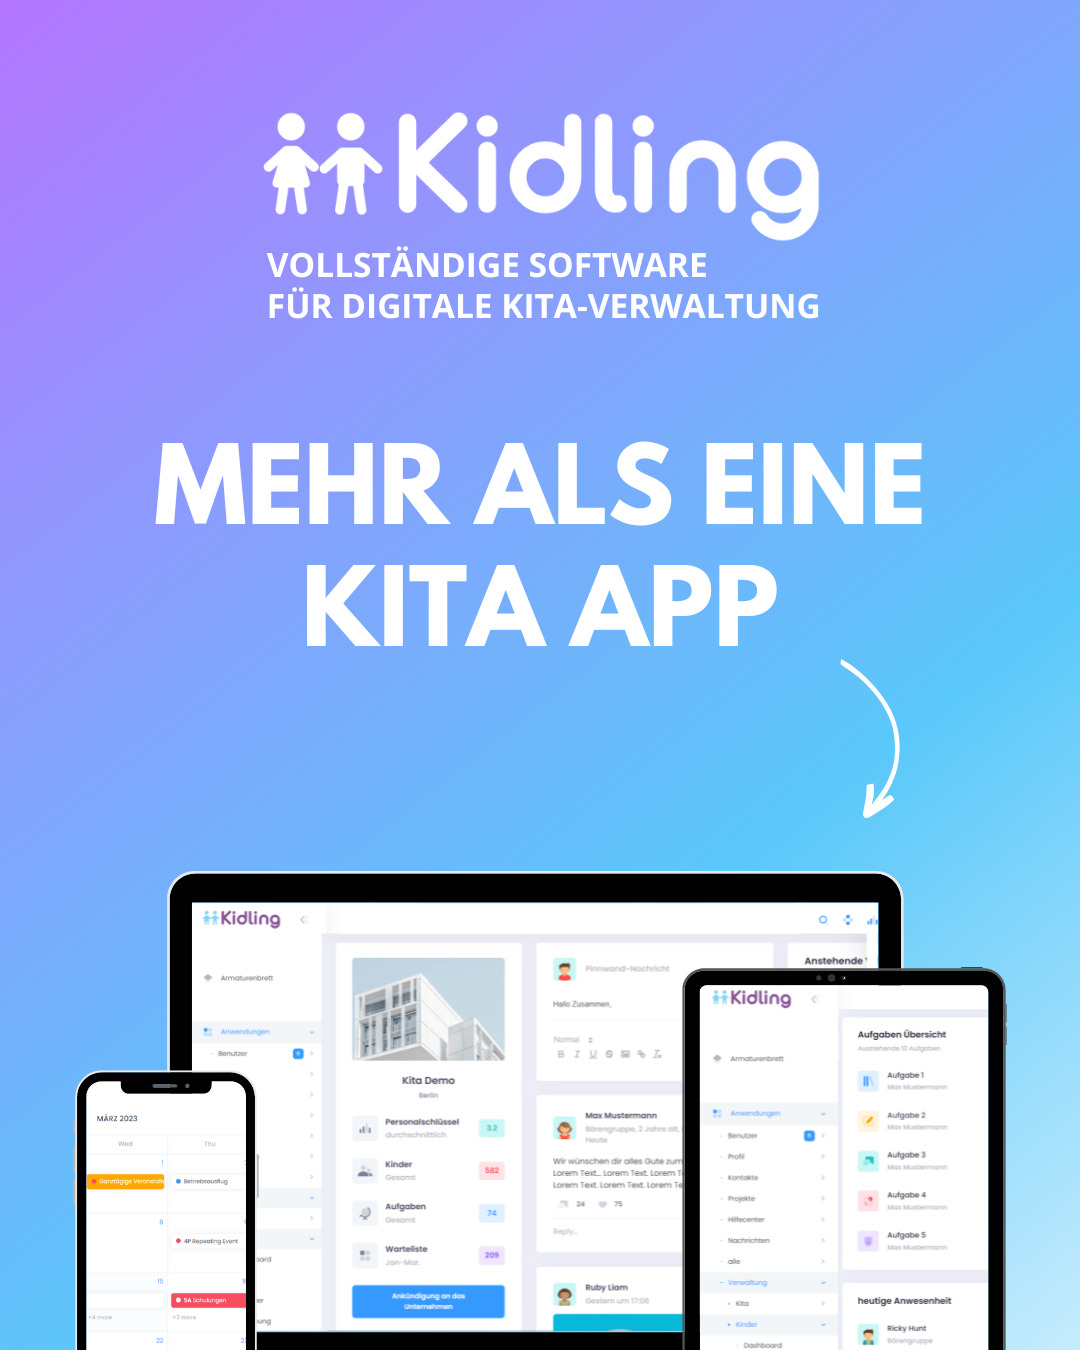 Kidling - mehr als eine Kita App - vollständige Kita Software